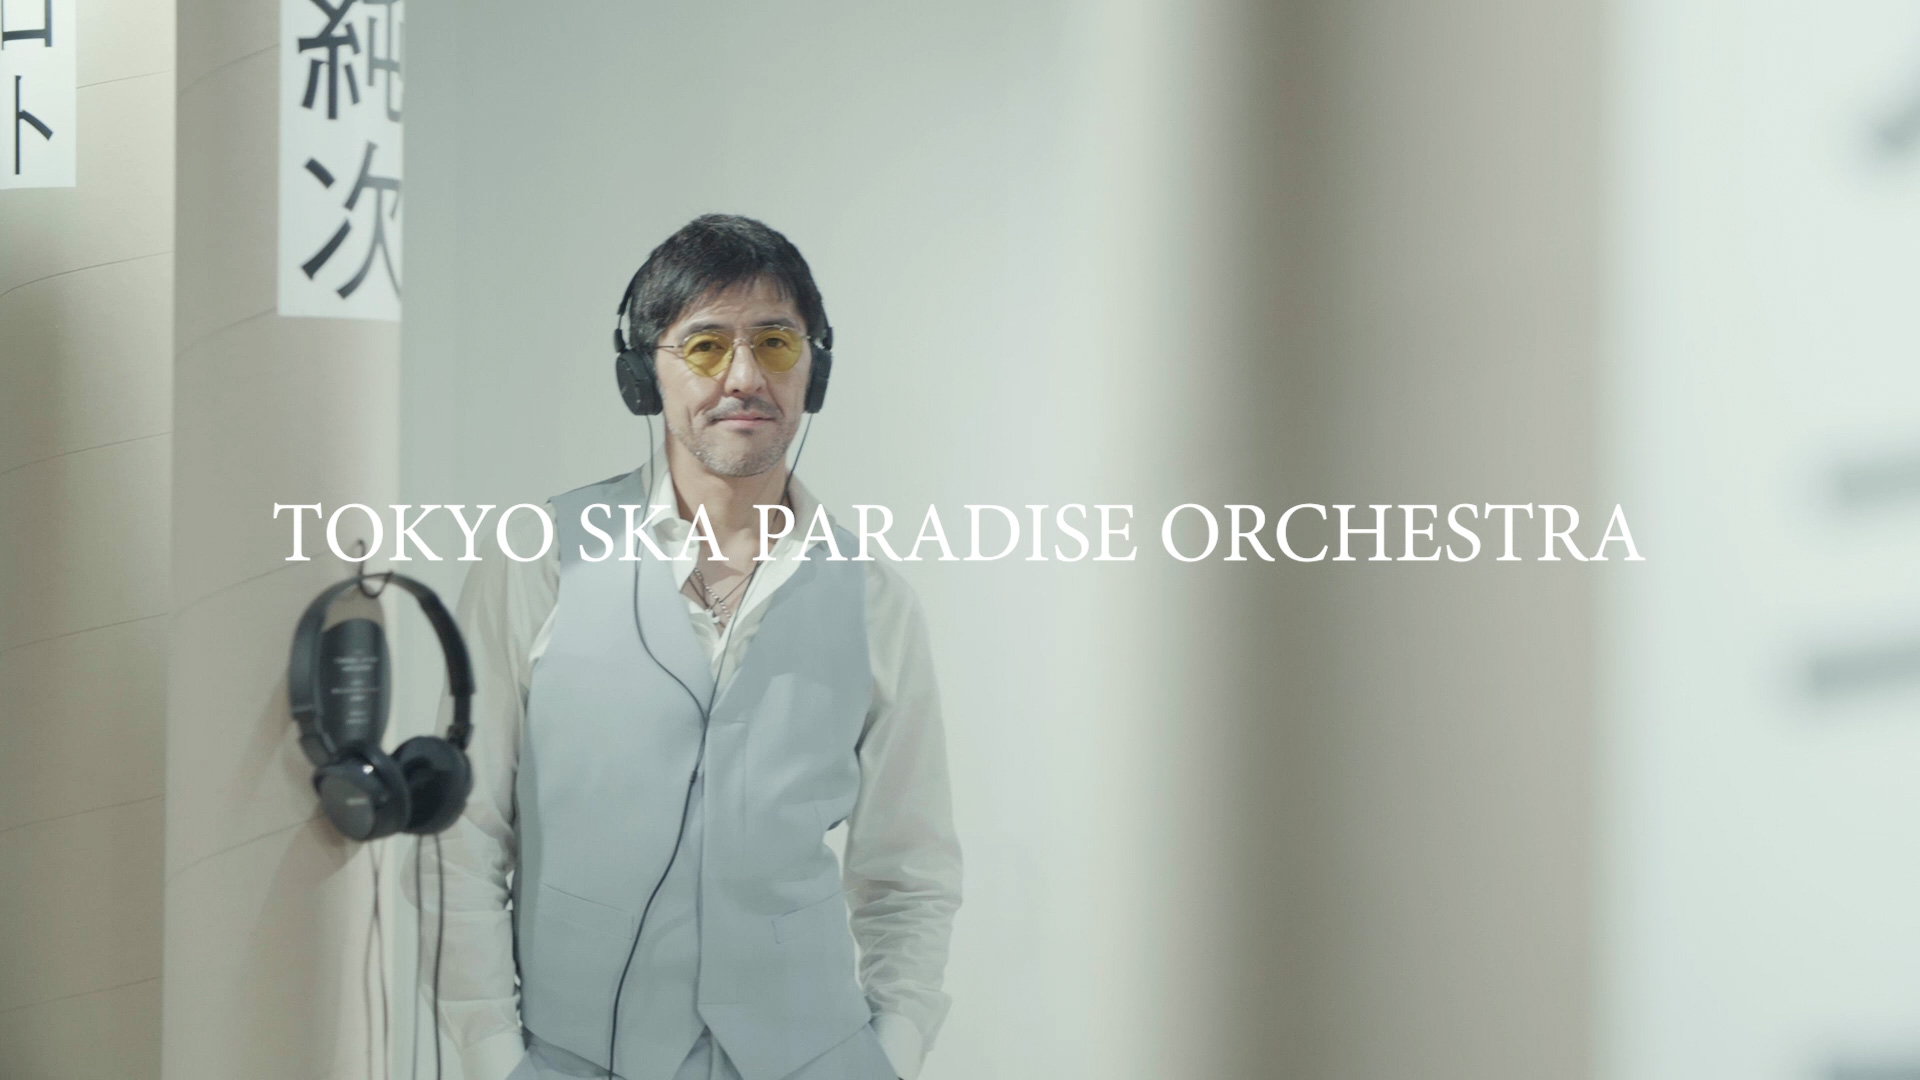 MUSIC IN THE PARK東京スカパラダイスオーケストラと作る音楽の森コメント